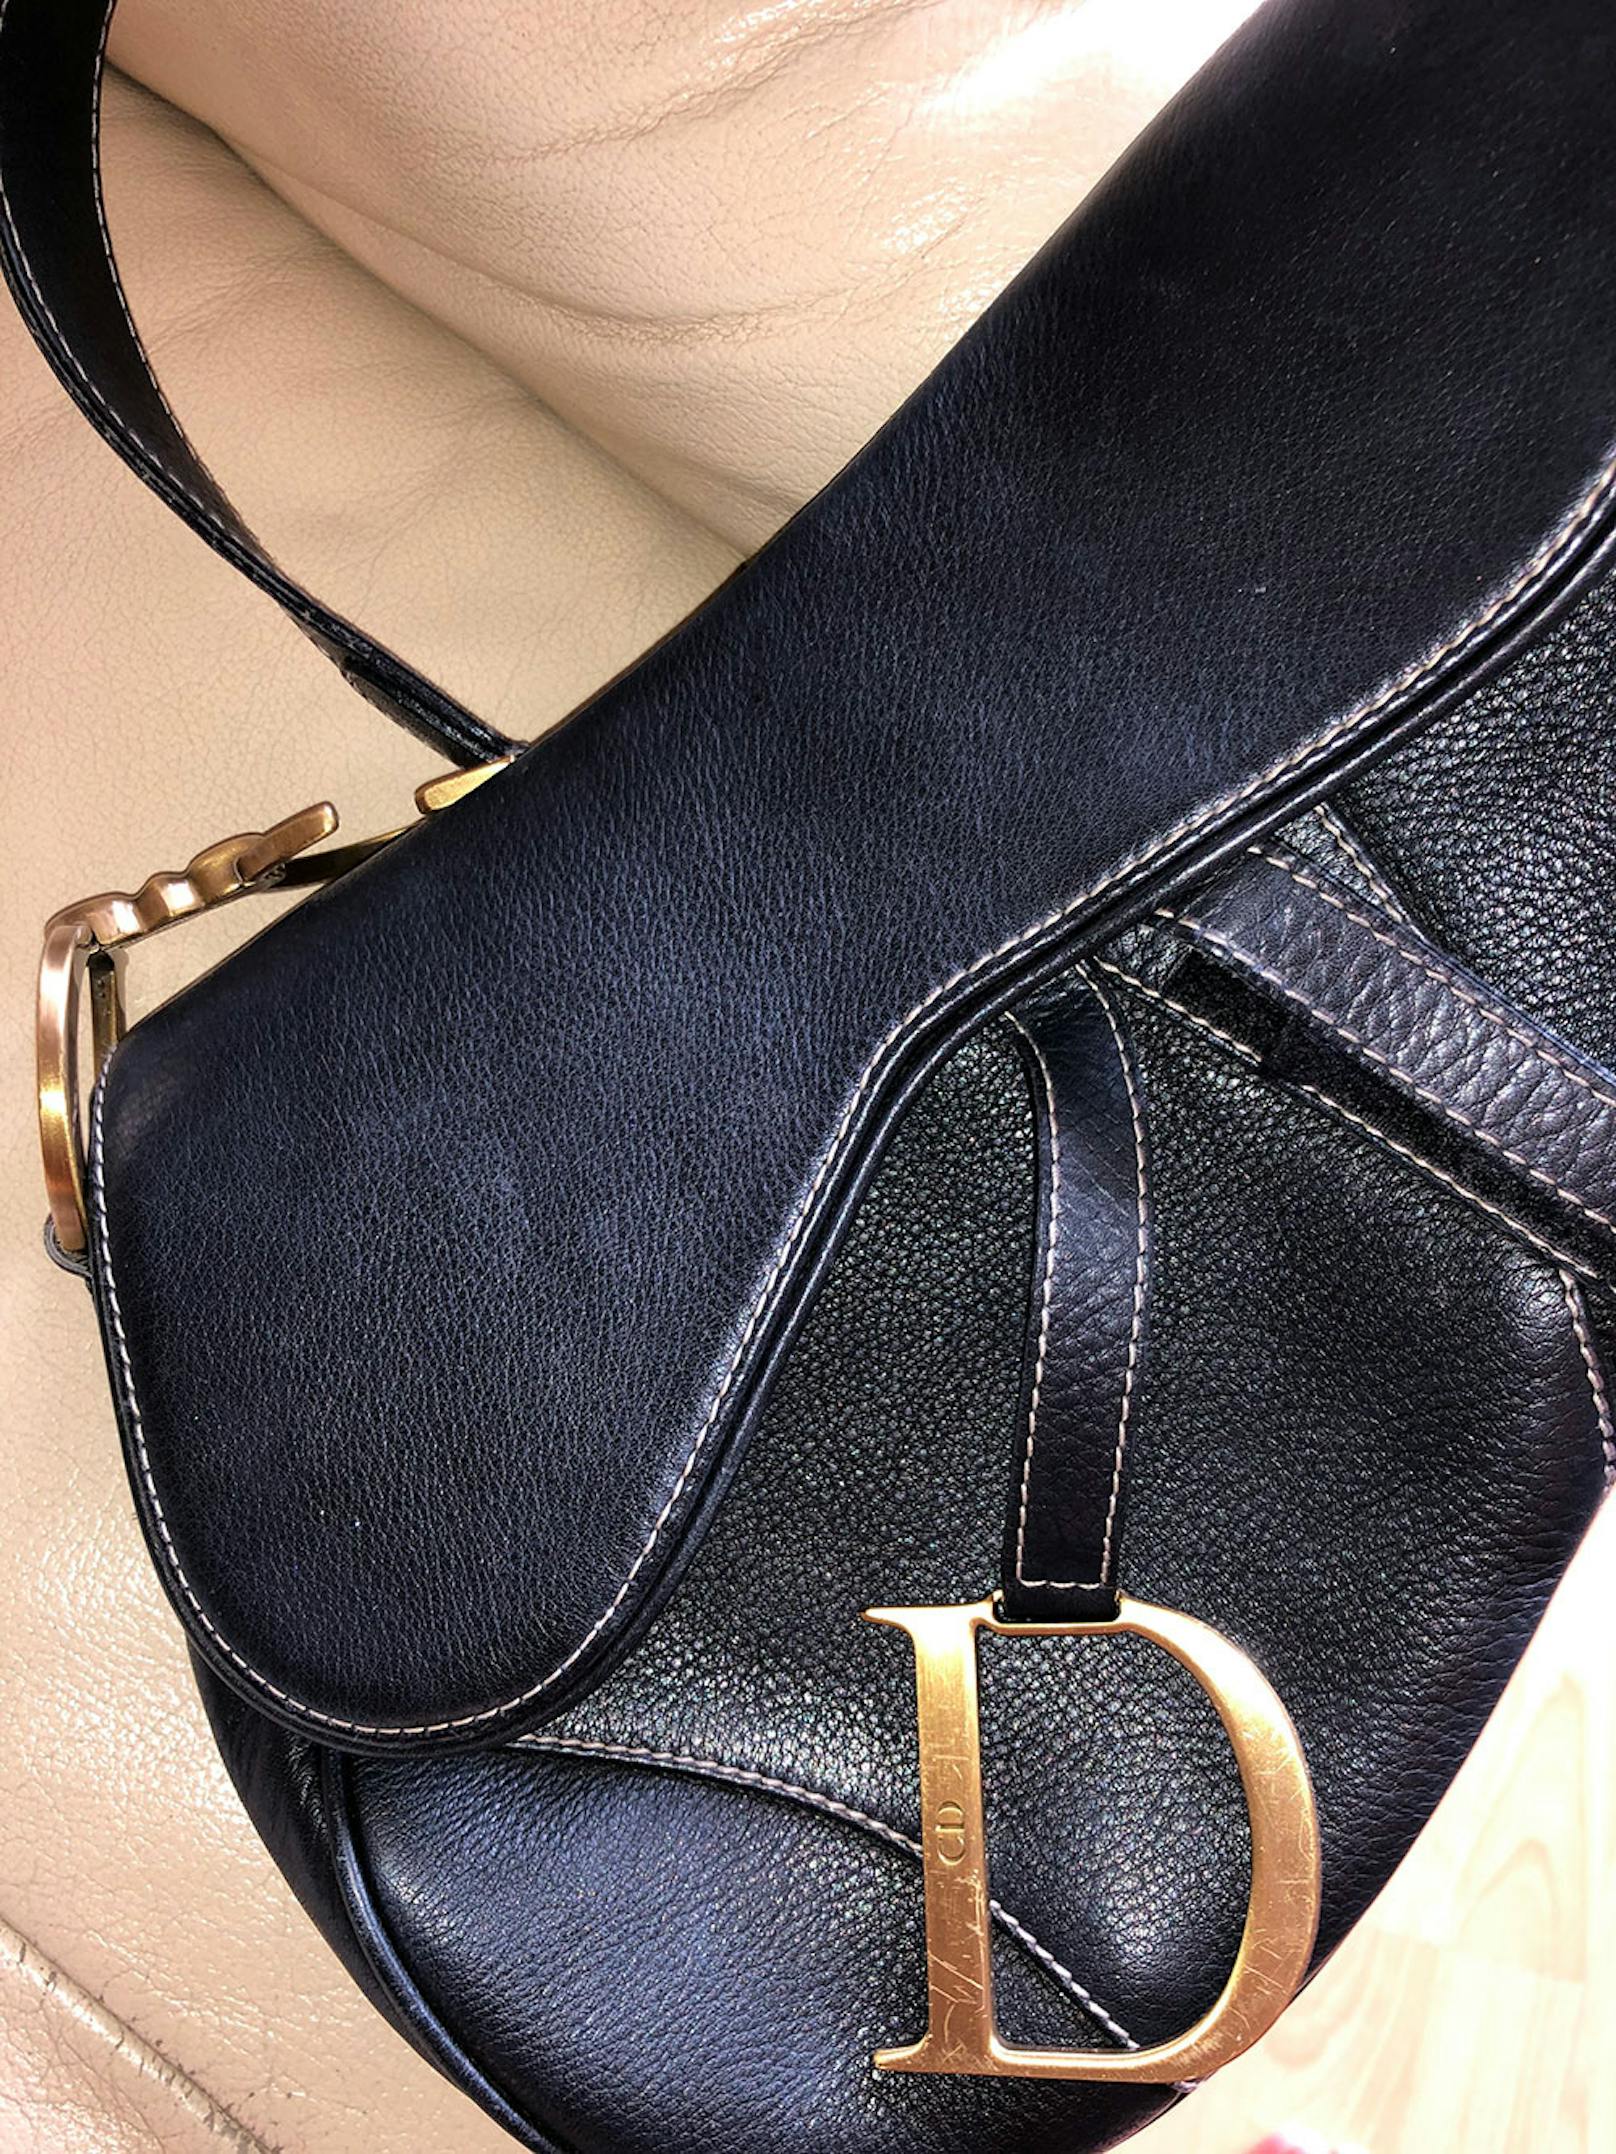 Eine begehrte Dior Saddle Bag, die vorher unter Farbunterschieden "litt".